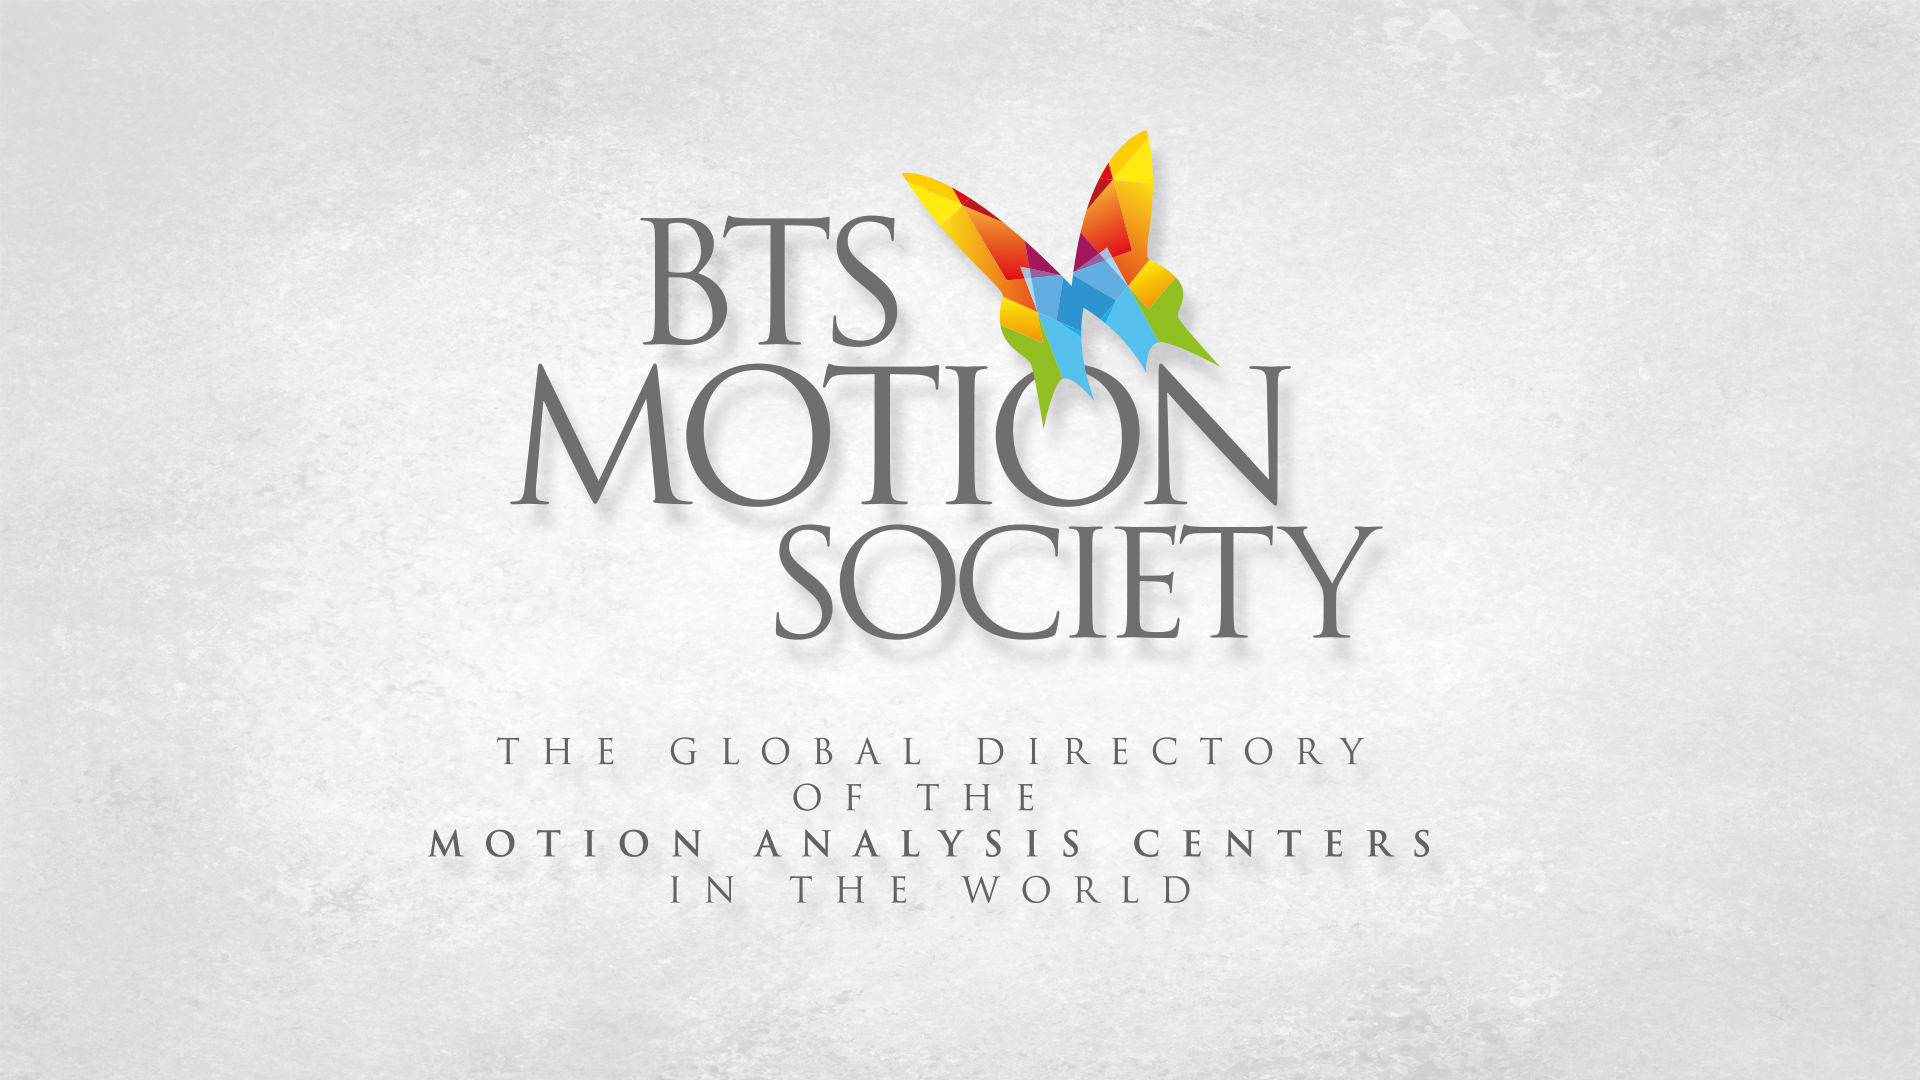 BTS MOTION SOCIETY